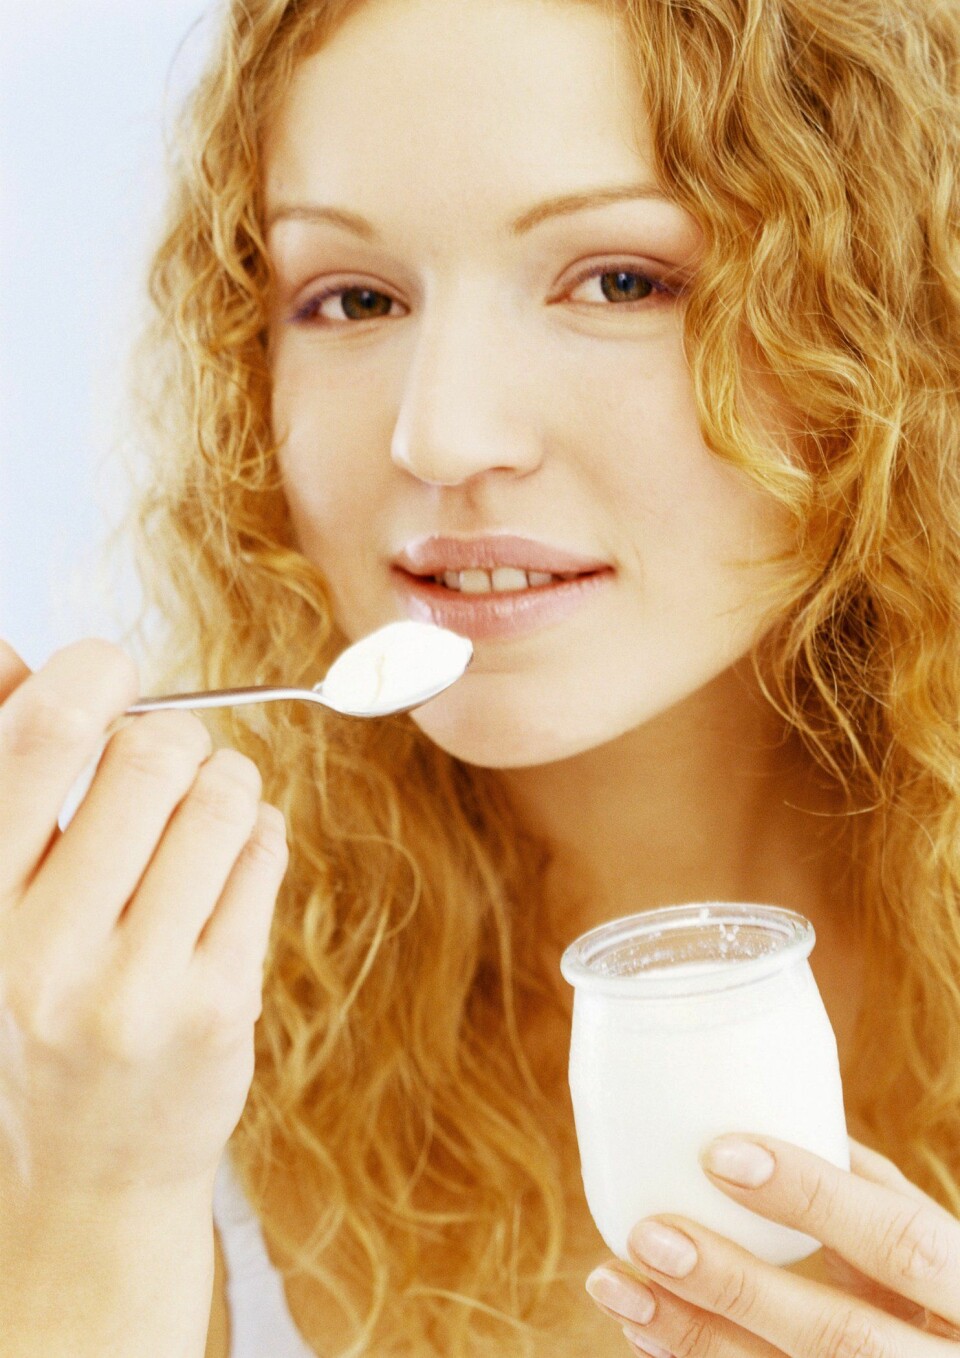 Om ikke så lenge kan du kanskje spise yoghurt mot tuberkulose fremfor å få vaksinen som sprøyte hos helsesøster. (Illustrasjonsfoto: www.colourbox.no)